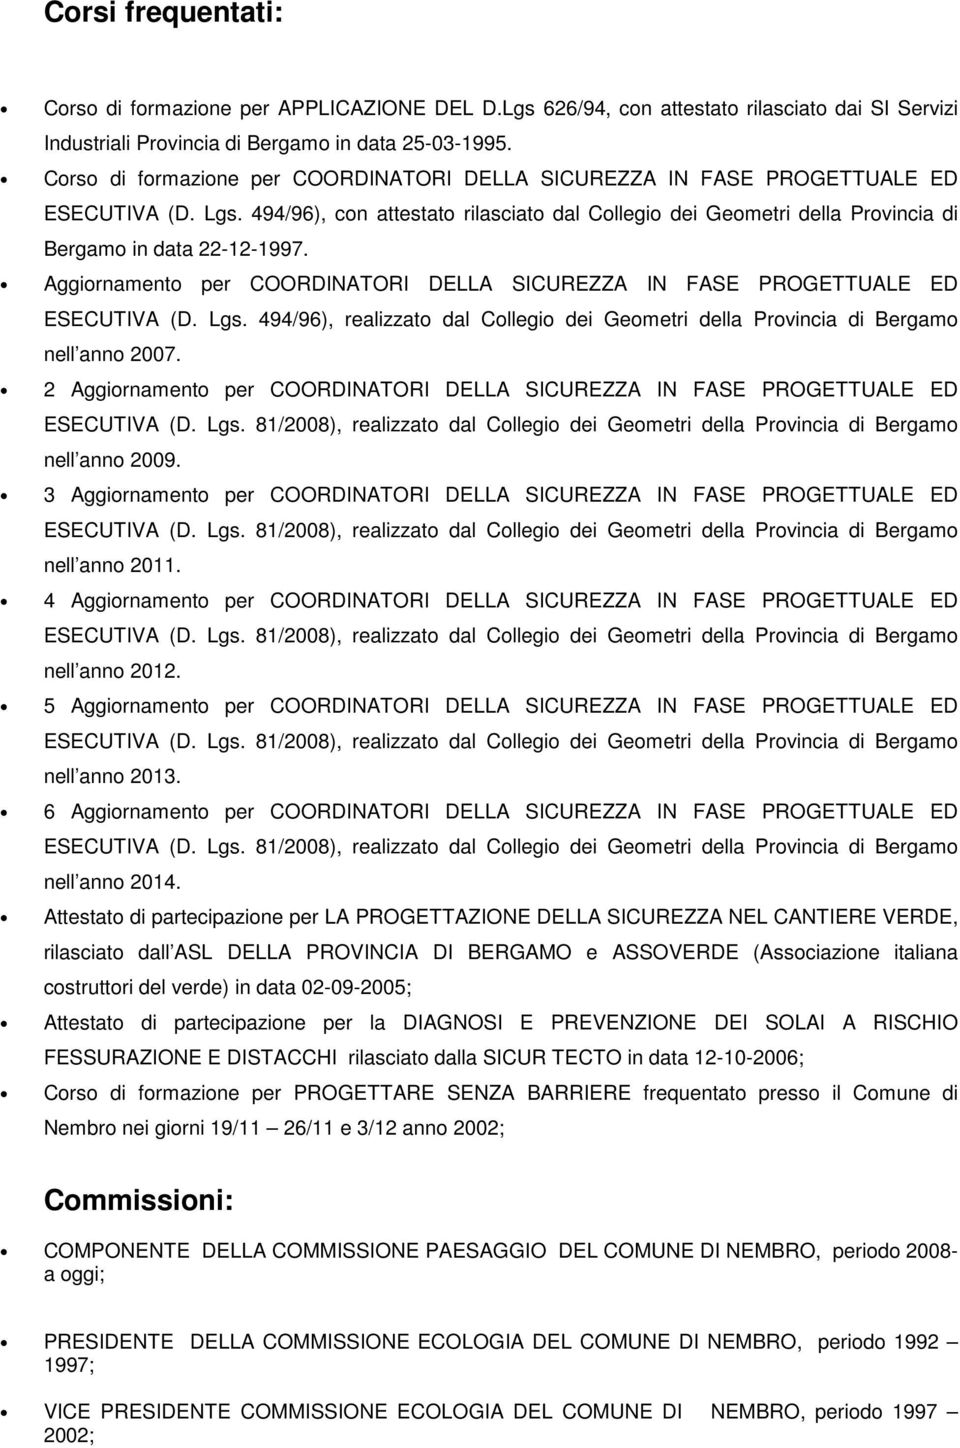 494/96), con attestato rilasciato dal Collegio dei Geometri della Provincia di Bergamo in data 22-12-1997. Aggiornamento per COORDINATORI DELLA SICUREZZA IN FASE PROGETTUALE ED ESECUTIVA (D. Lgs.